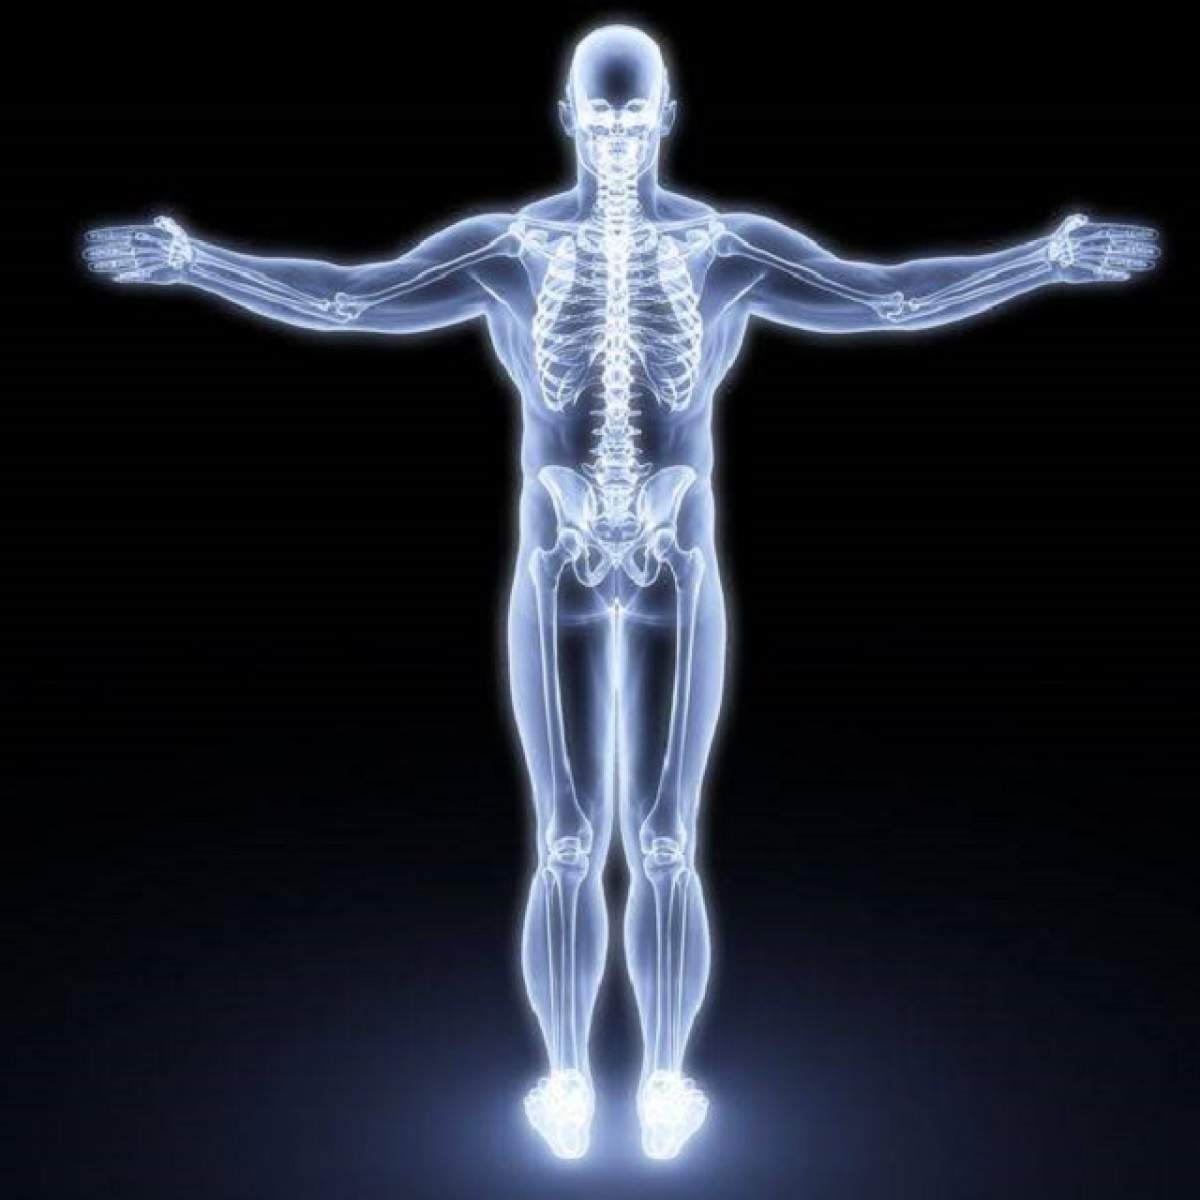 ÎNTREBAREA ZILEI - DUMINICĂ: Care este cel mai lung organ din corpul omenesc?